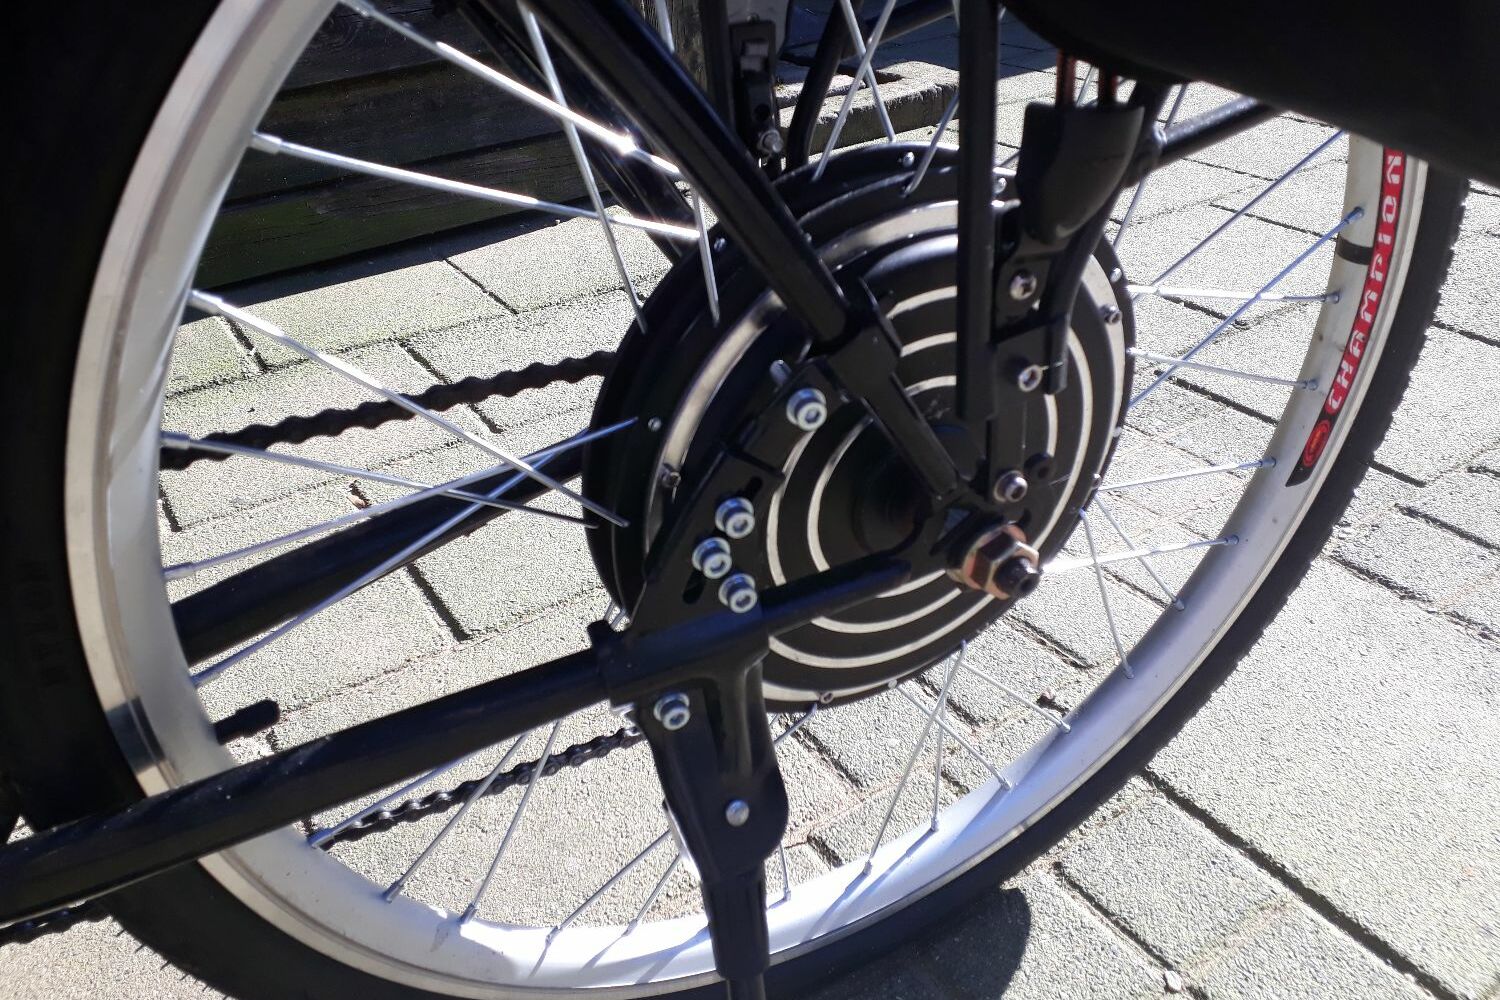 transmissie stel je voor scheuren electriche fiets dunlop - Tweedehands Tourfiets - Bikaroo